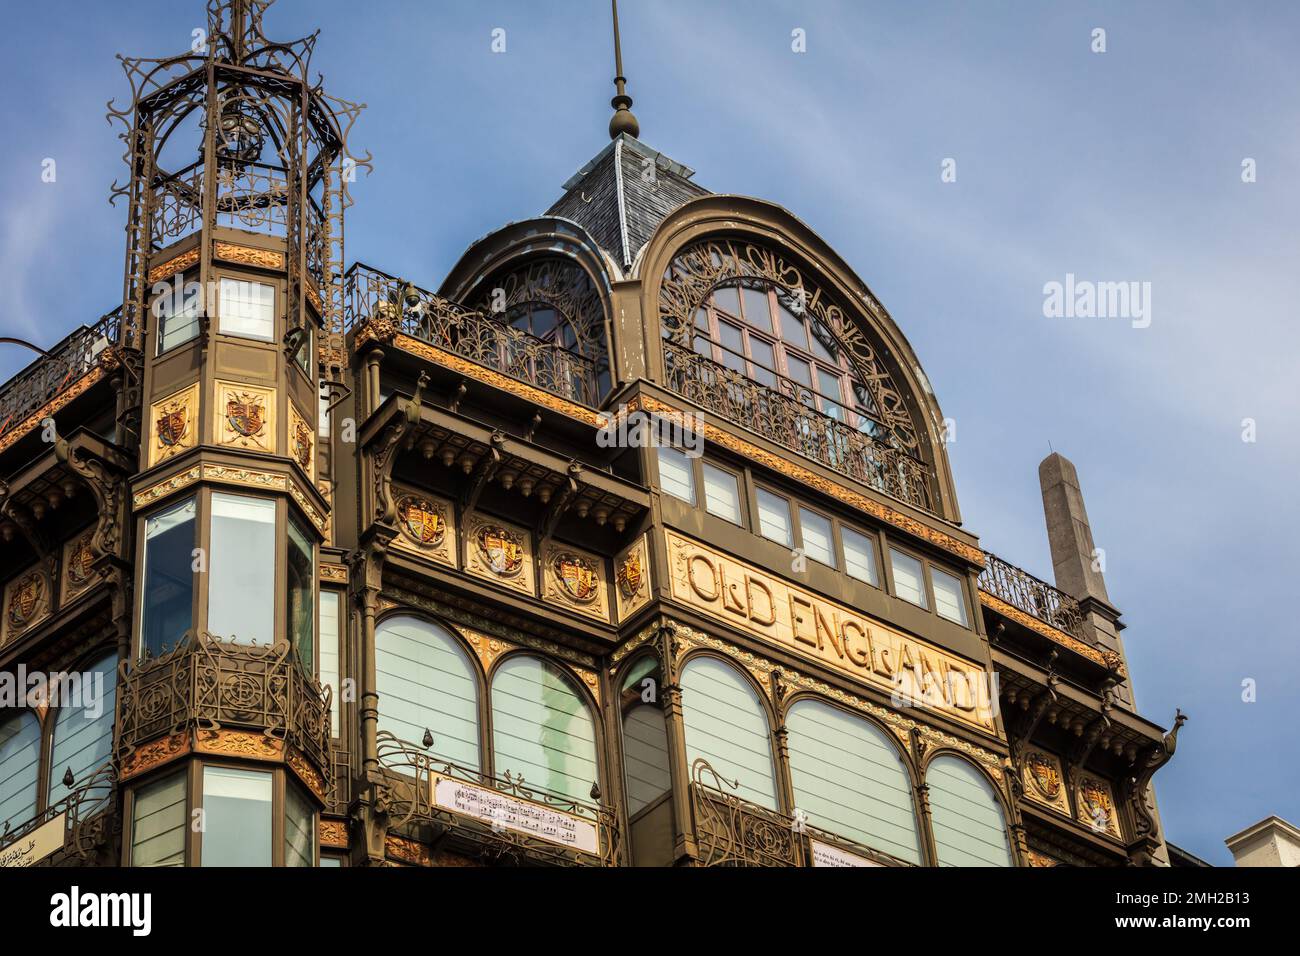 Das Alte England, ein Jugendstilgebäude, heute das Zuhause eines Museums für Musikinstrumente. Brüssel. Belgien. Stockfoto